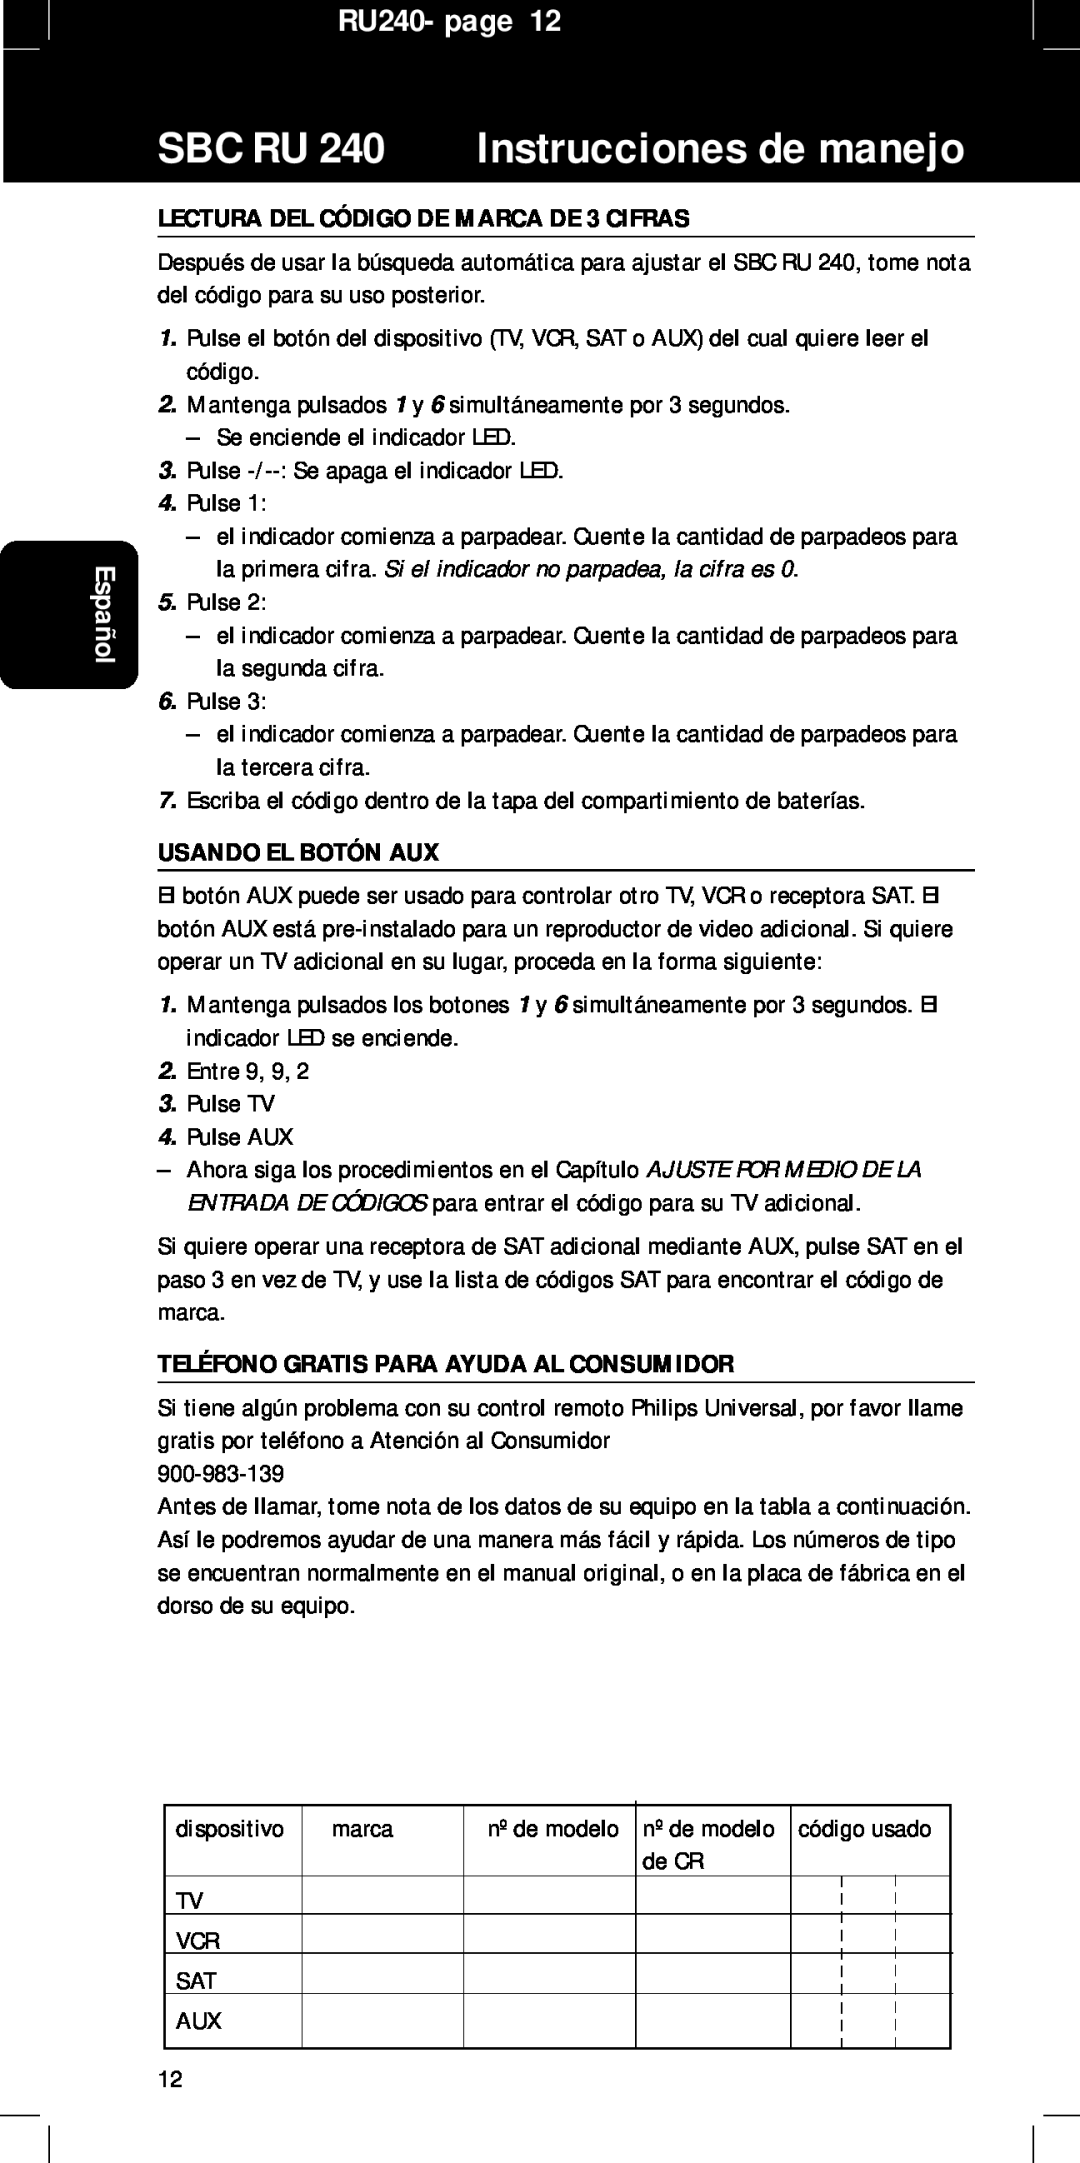 Philips RU240 manual LECTURA DEL CÓDIGO DE MARCA DE 3 CIFRAS, Usando El Botón Aux, Teléfono Gratis Para Ayuda Al Consumidor 